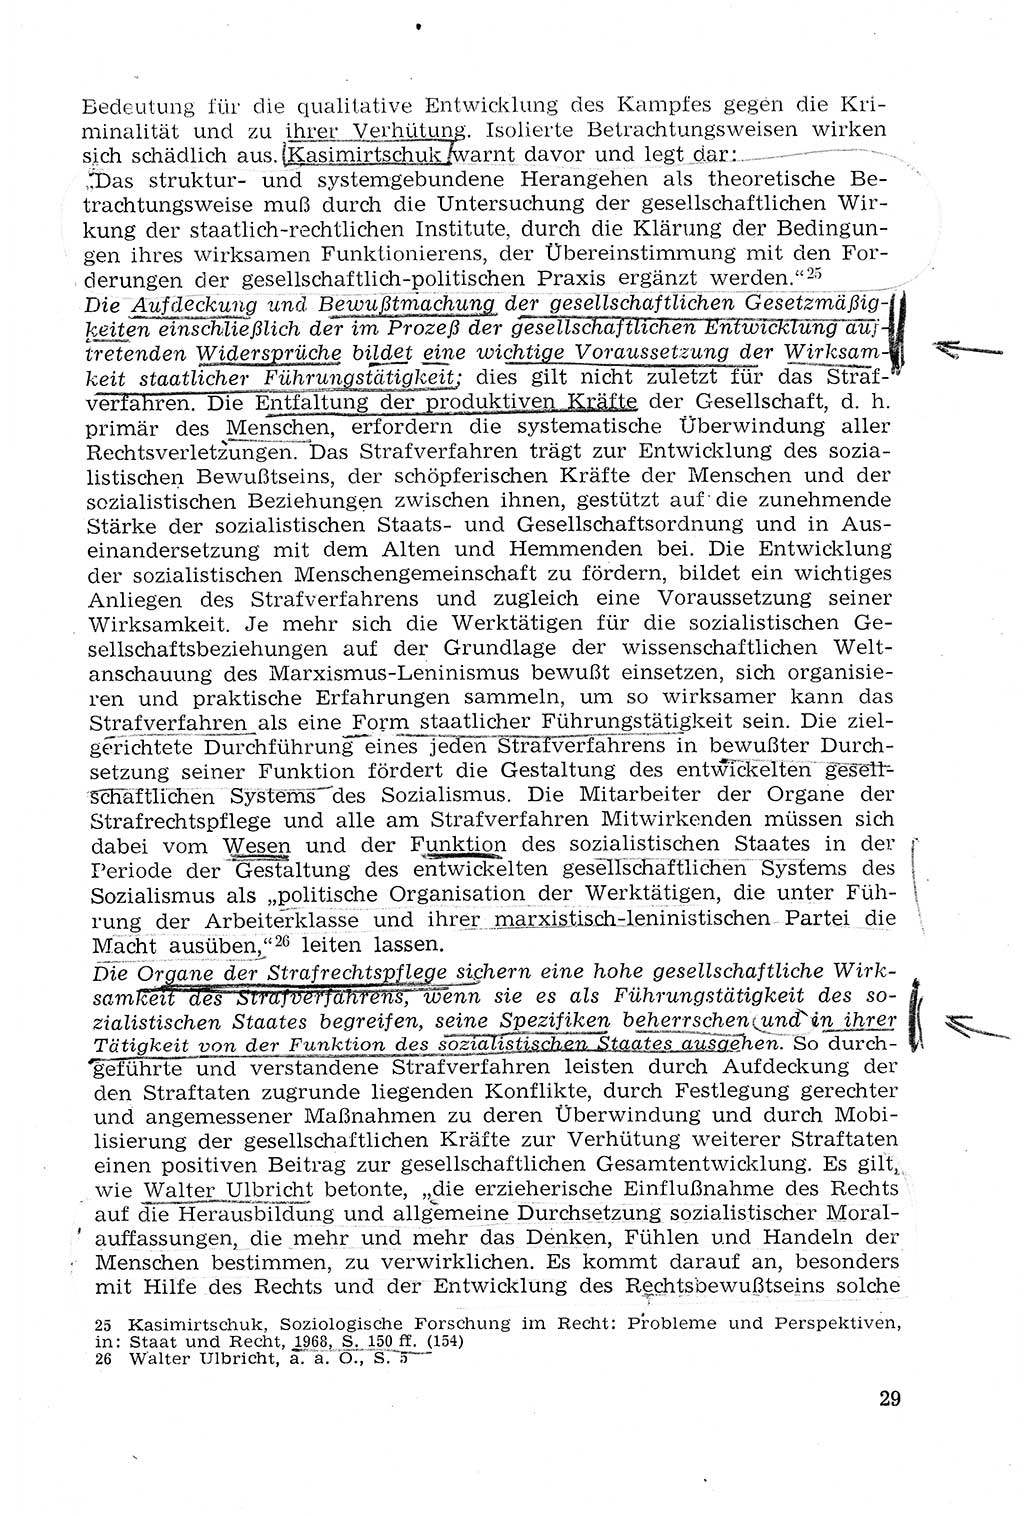 StrafprozeÃŸrecht der DDR (Deutsche Demokratische Republik), Lehrmaterial 1969, Seite 29 (StrafprozeÃŸr. DDR Lehrmat. 1969, S. 29)